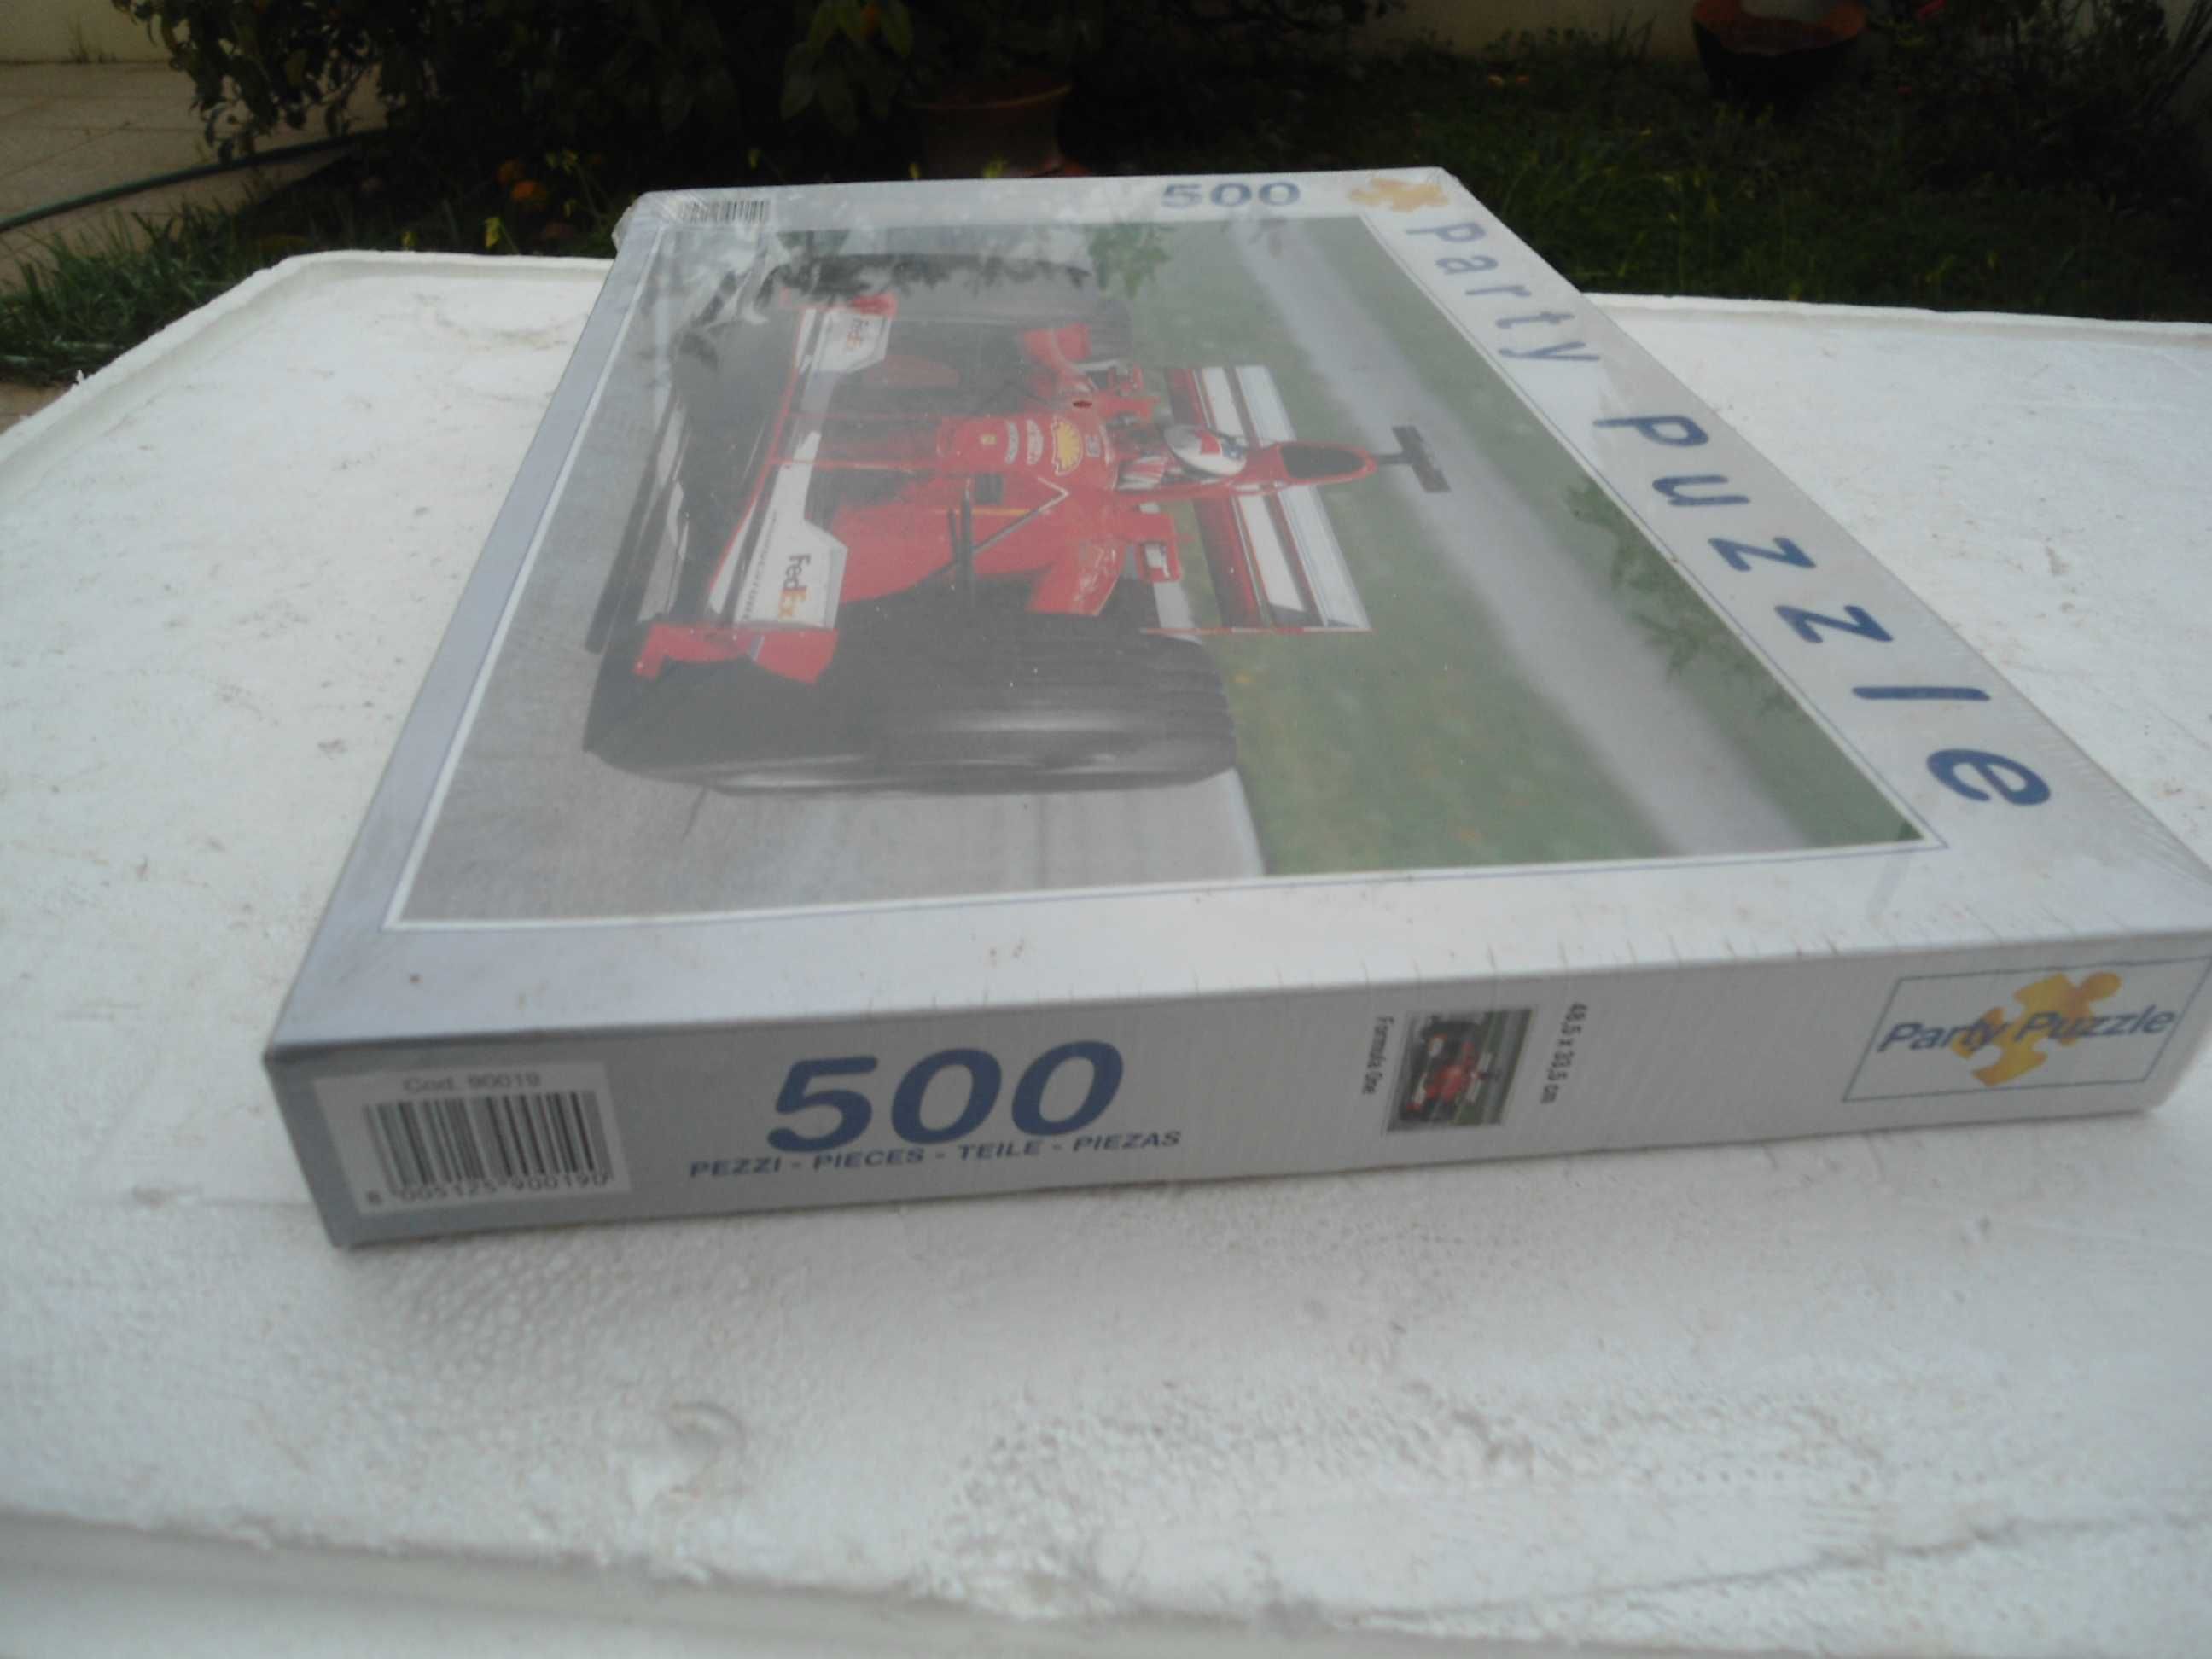 Puzzle Party Formula One 500 peças ( NOVO )